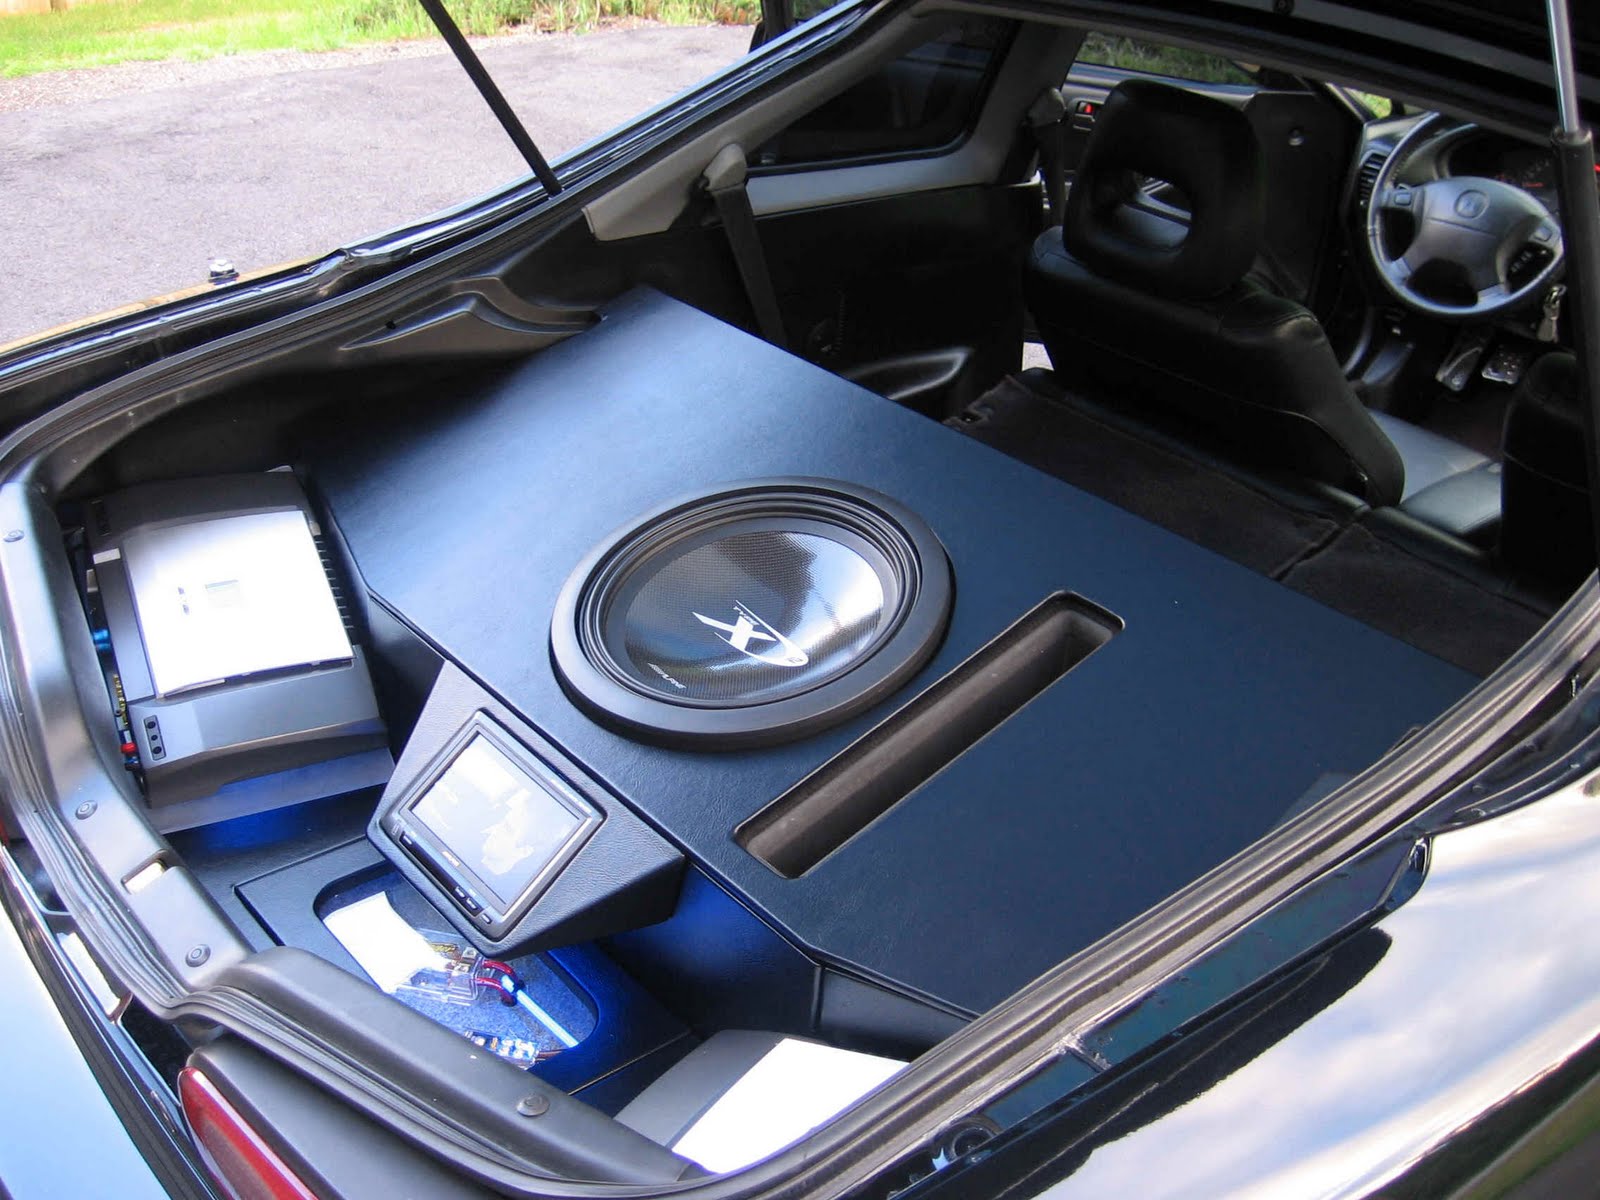 Car Stereo Speaker: Let Your Car Stereo Speak For Itself